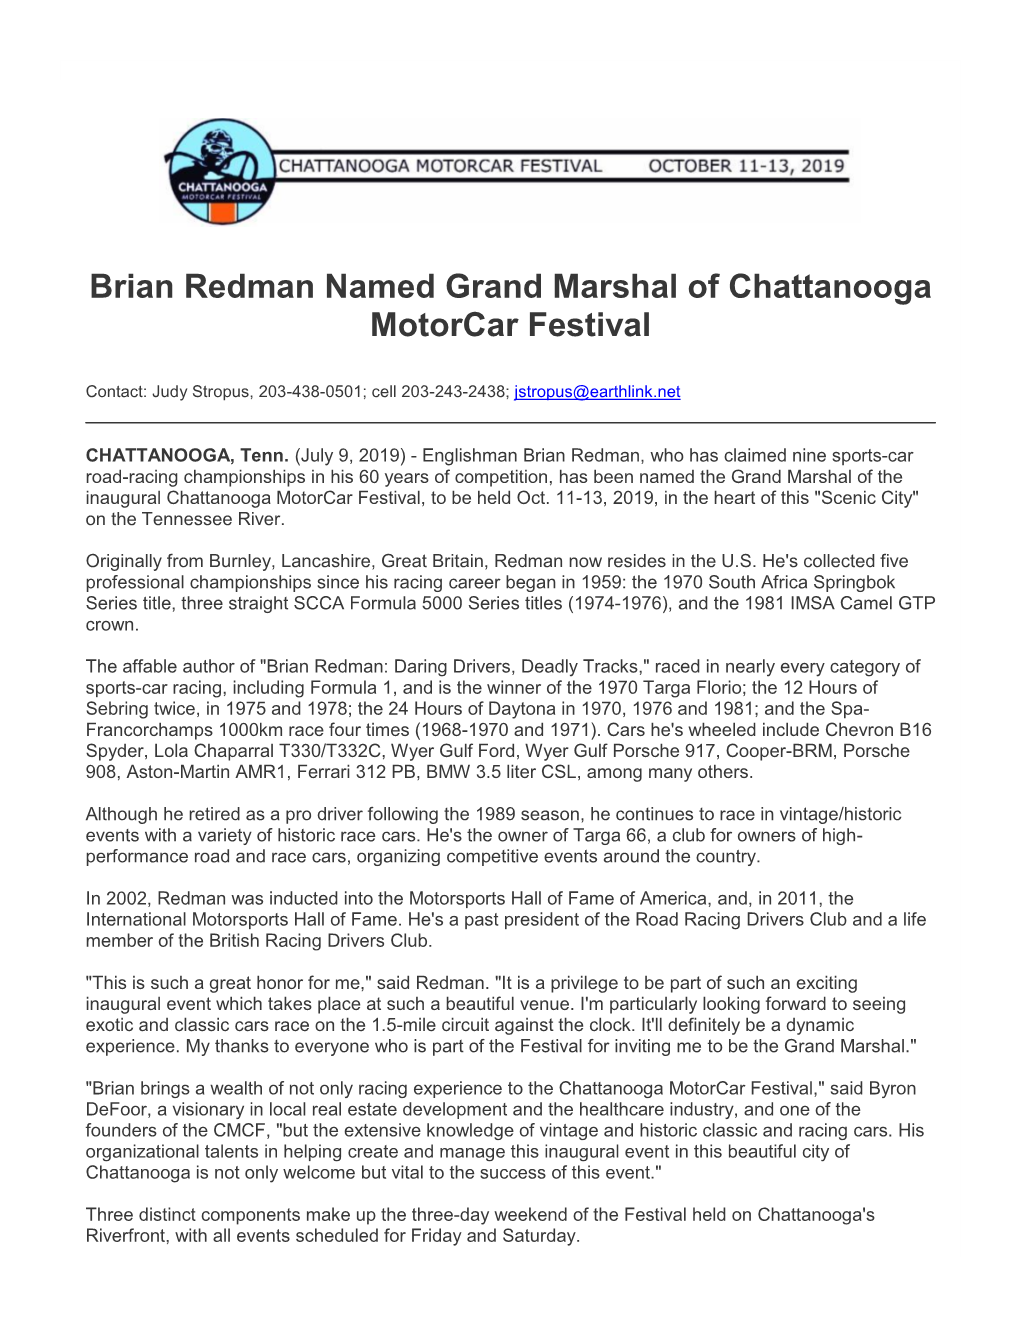 Brian Redman Named Grand Marshal of Chattanooga Motorcar Festival